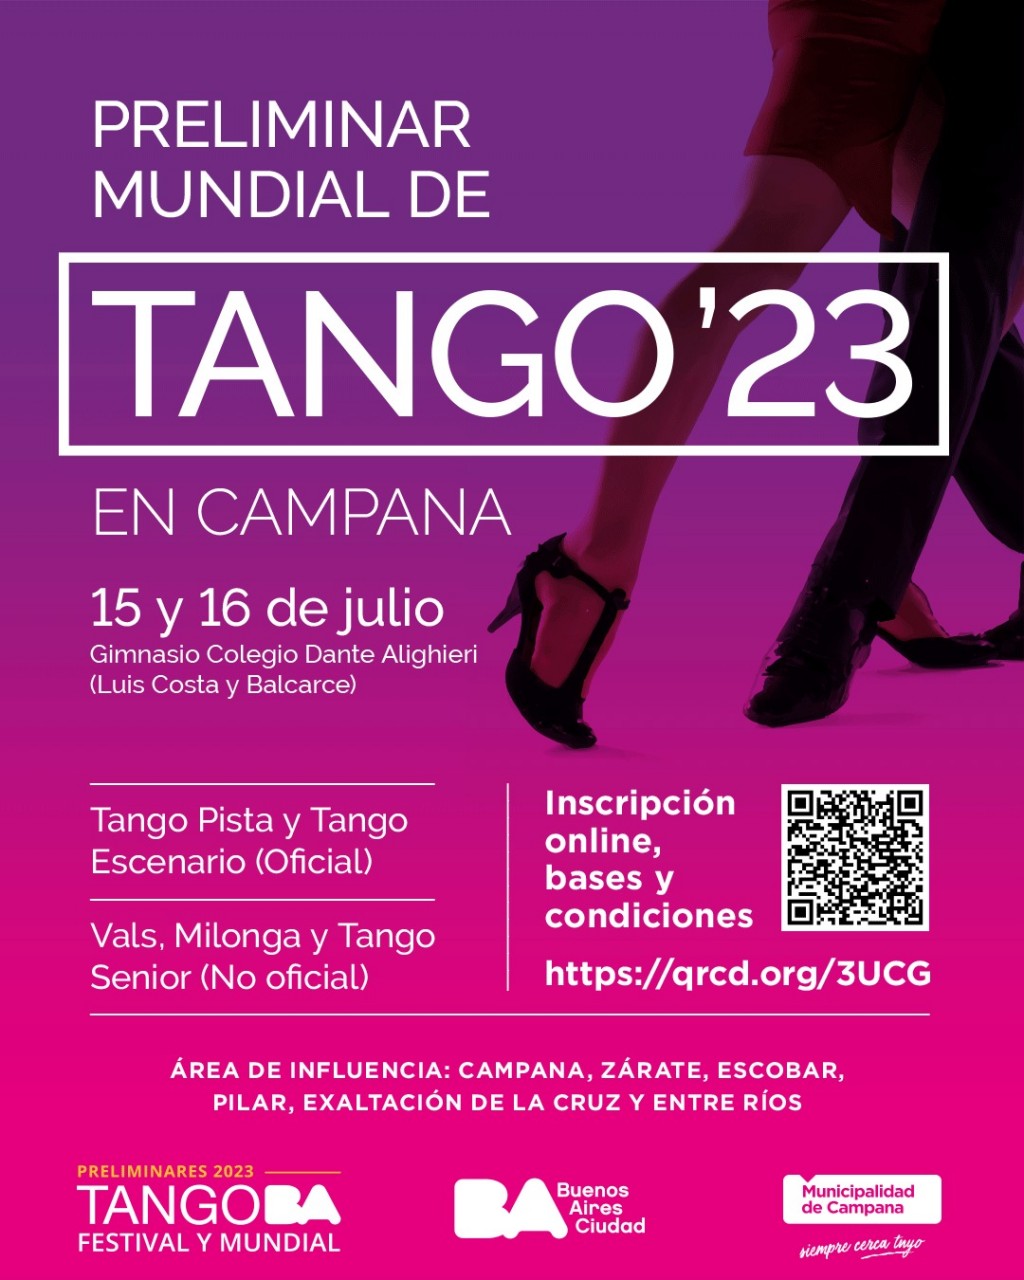 Campana volverá a ser sede del Preliminar del Mundial de Tango